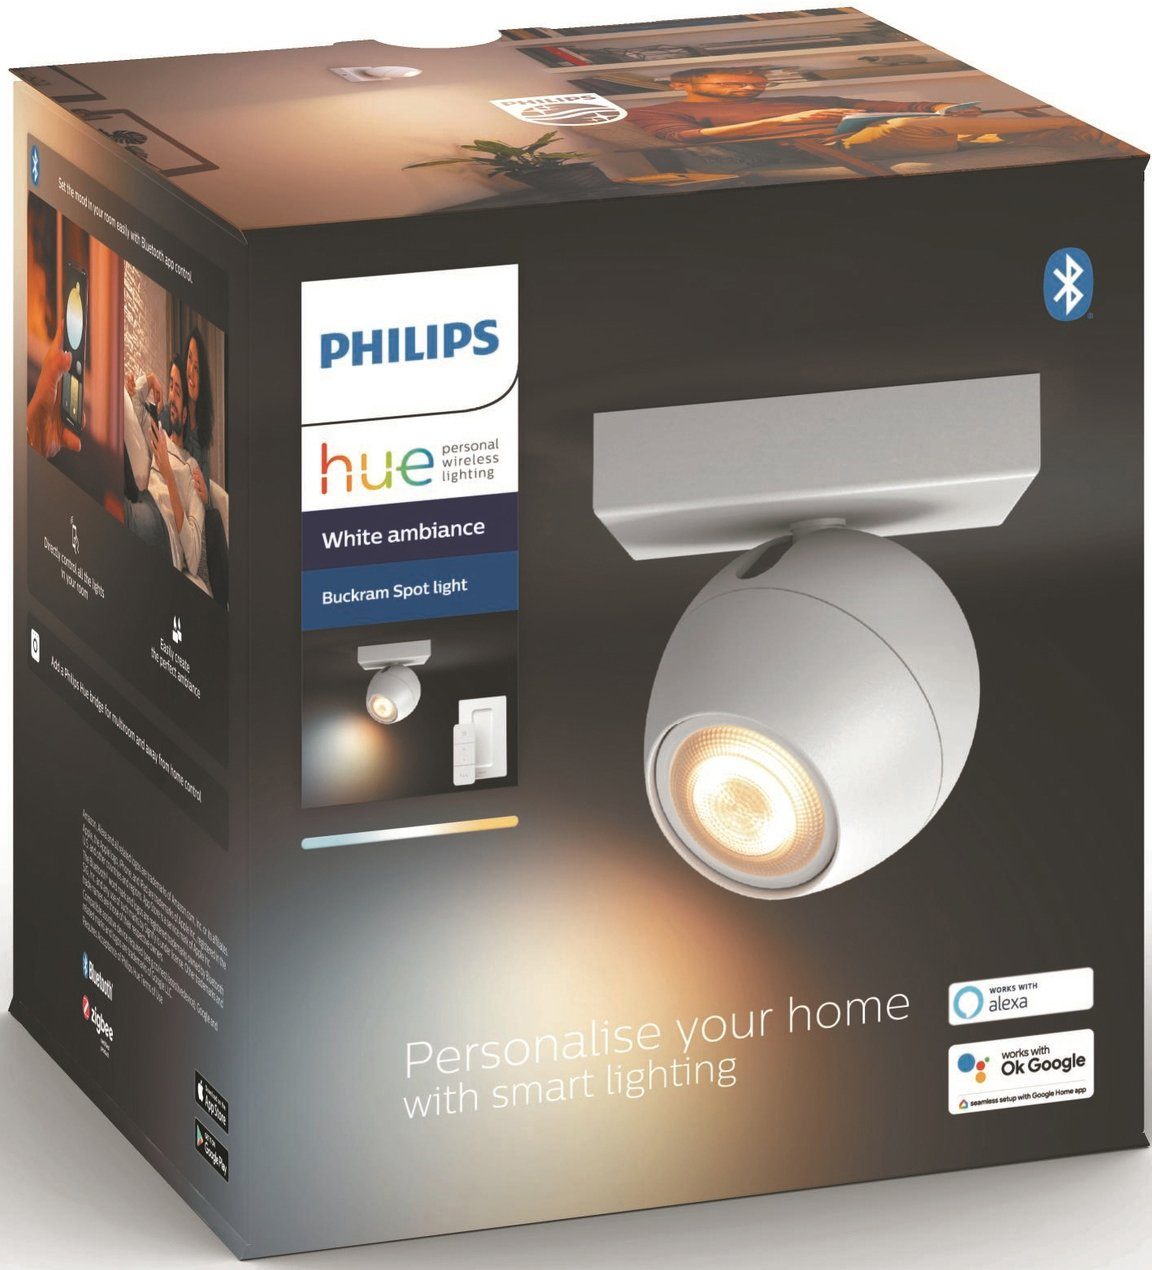 Warmweiß LED Hue wechselbar, Dimmfunktion, Flutlichtstrahler Buckram, Philips Leuchtmittel